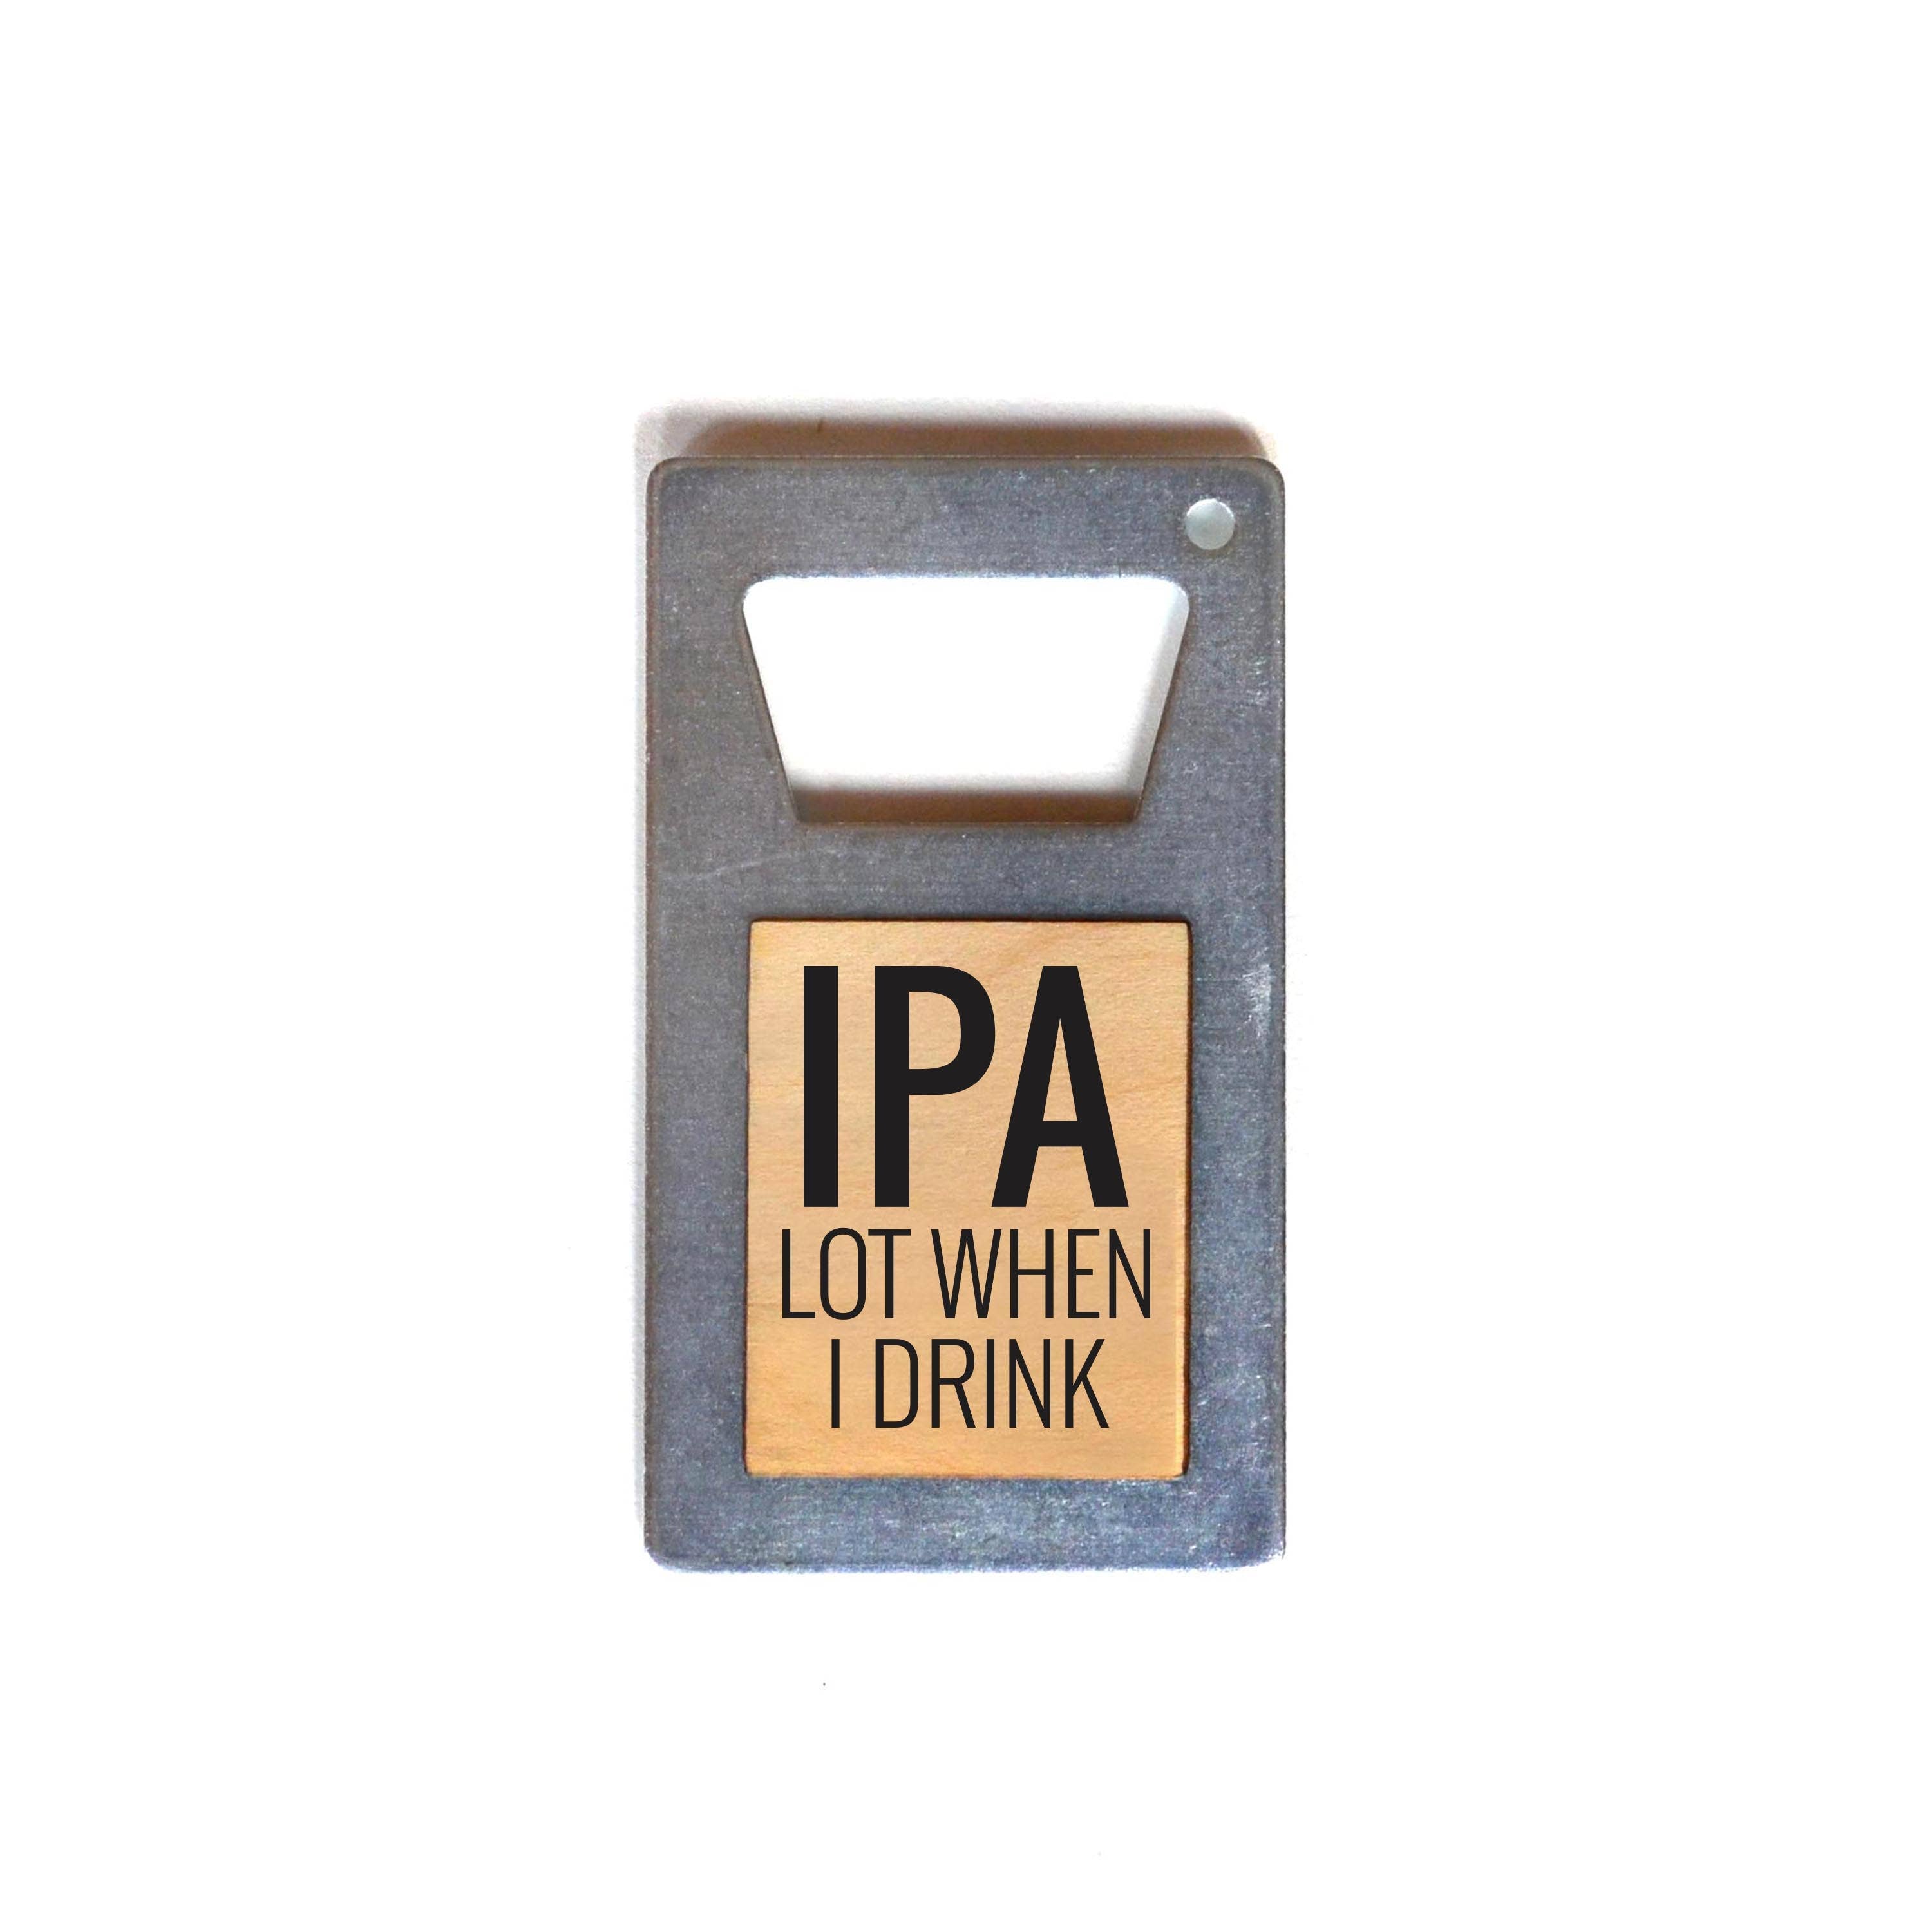 IPA Lot When I Drink Beer Bottle Opener